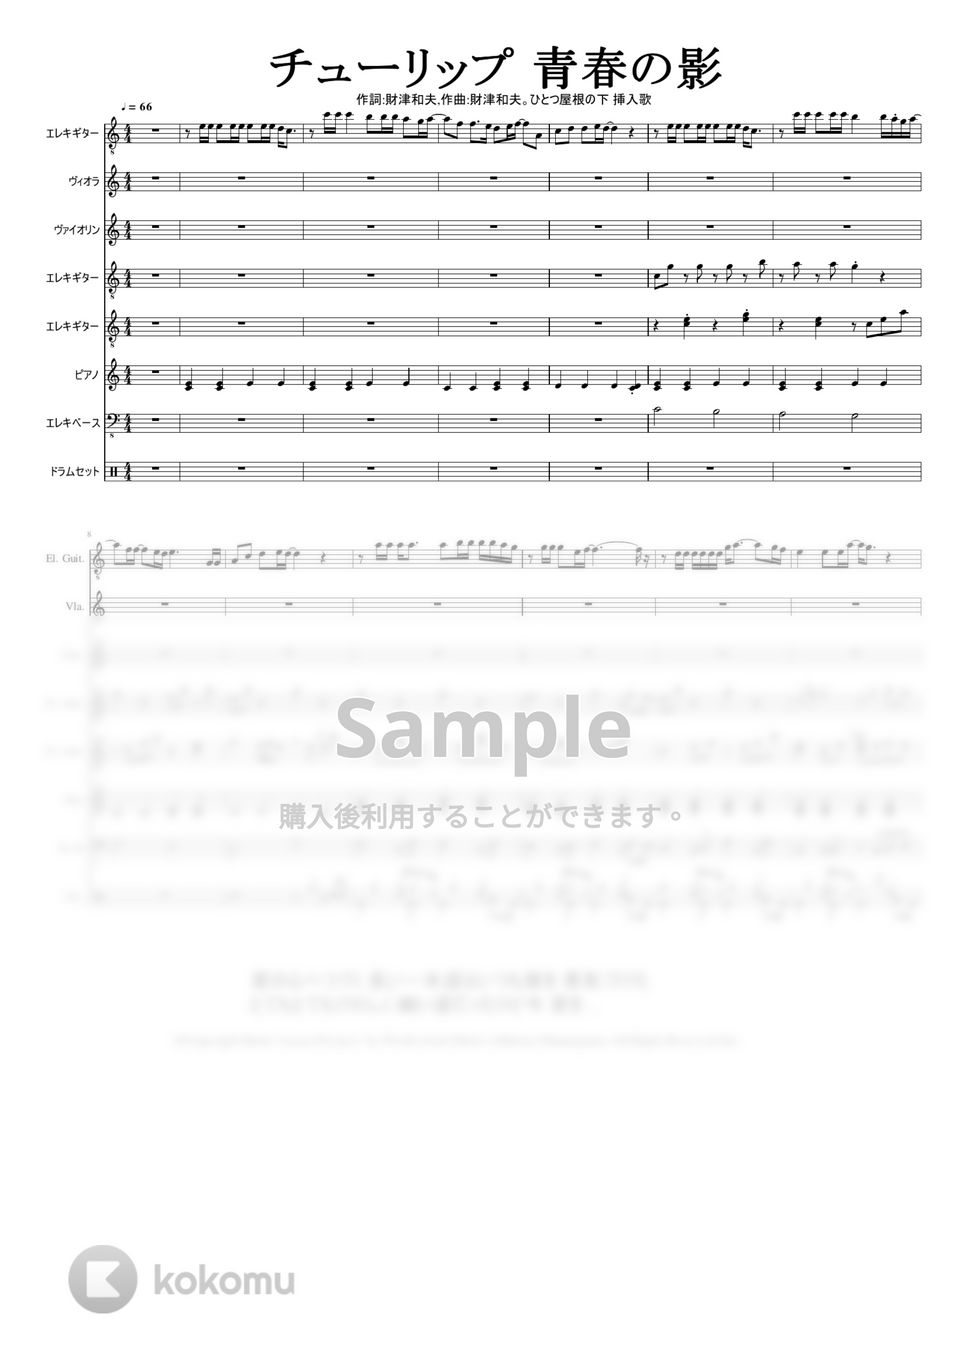 歌手：チューリップ　作詞：財津和夫. 作曲：財津和夫 - 青春の影 by Mitsuru Minamiyama